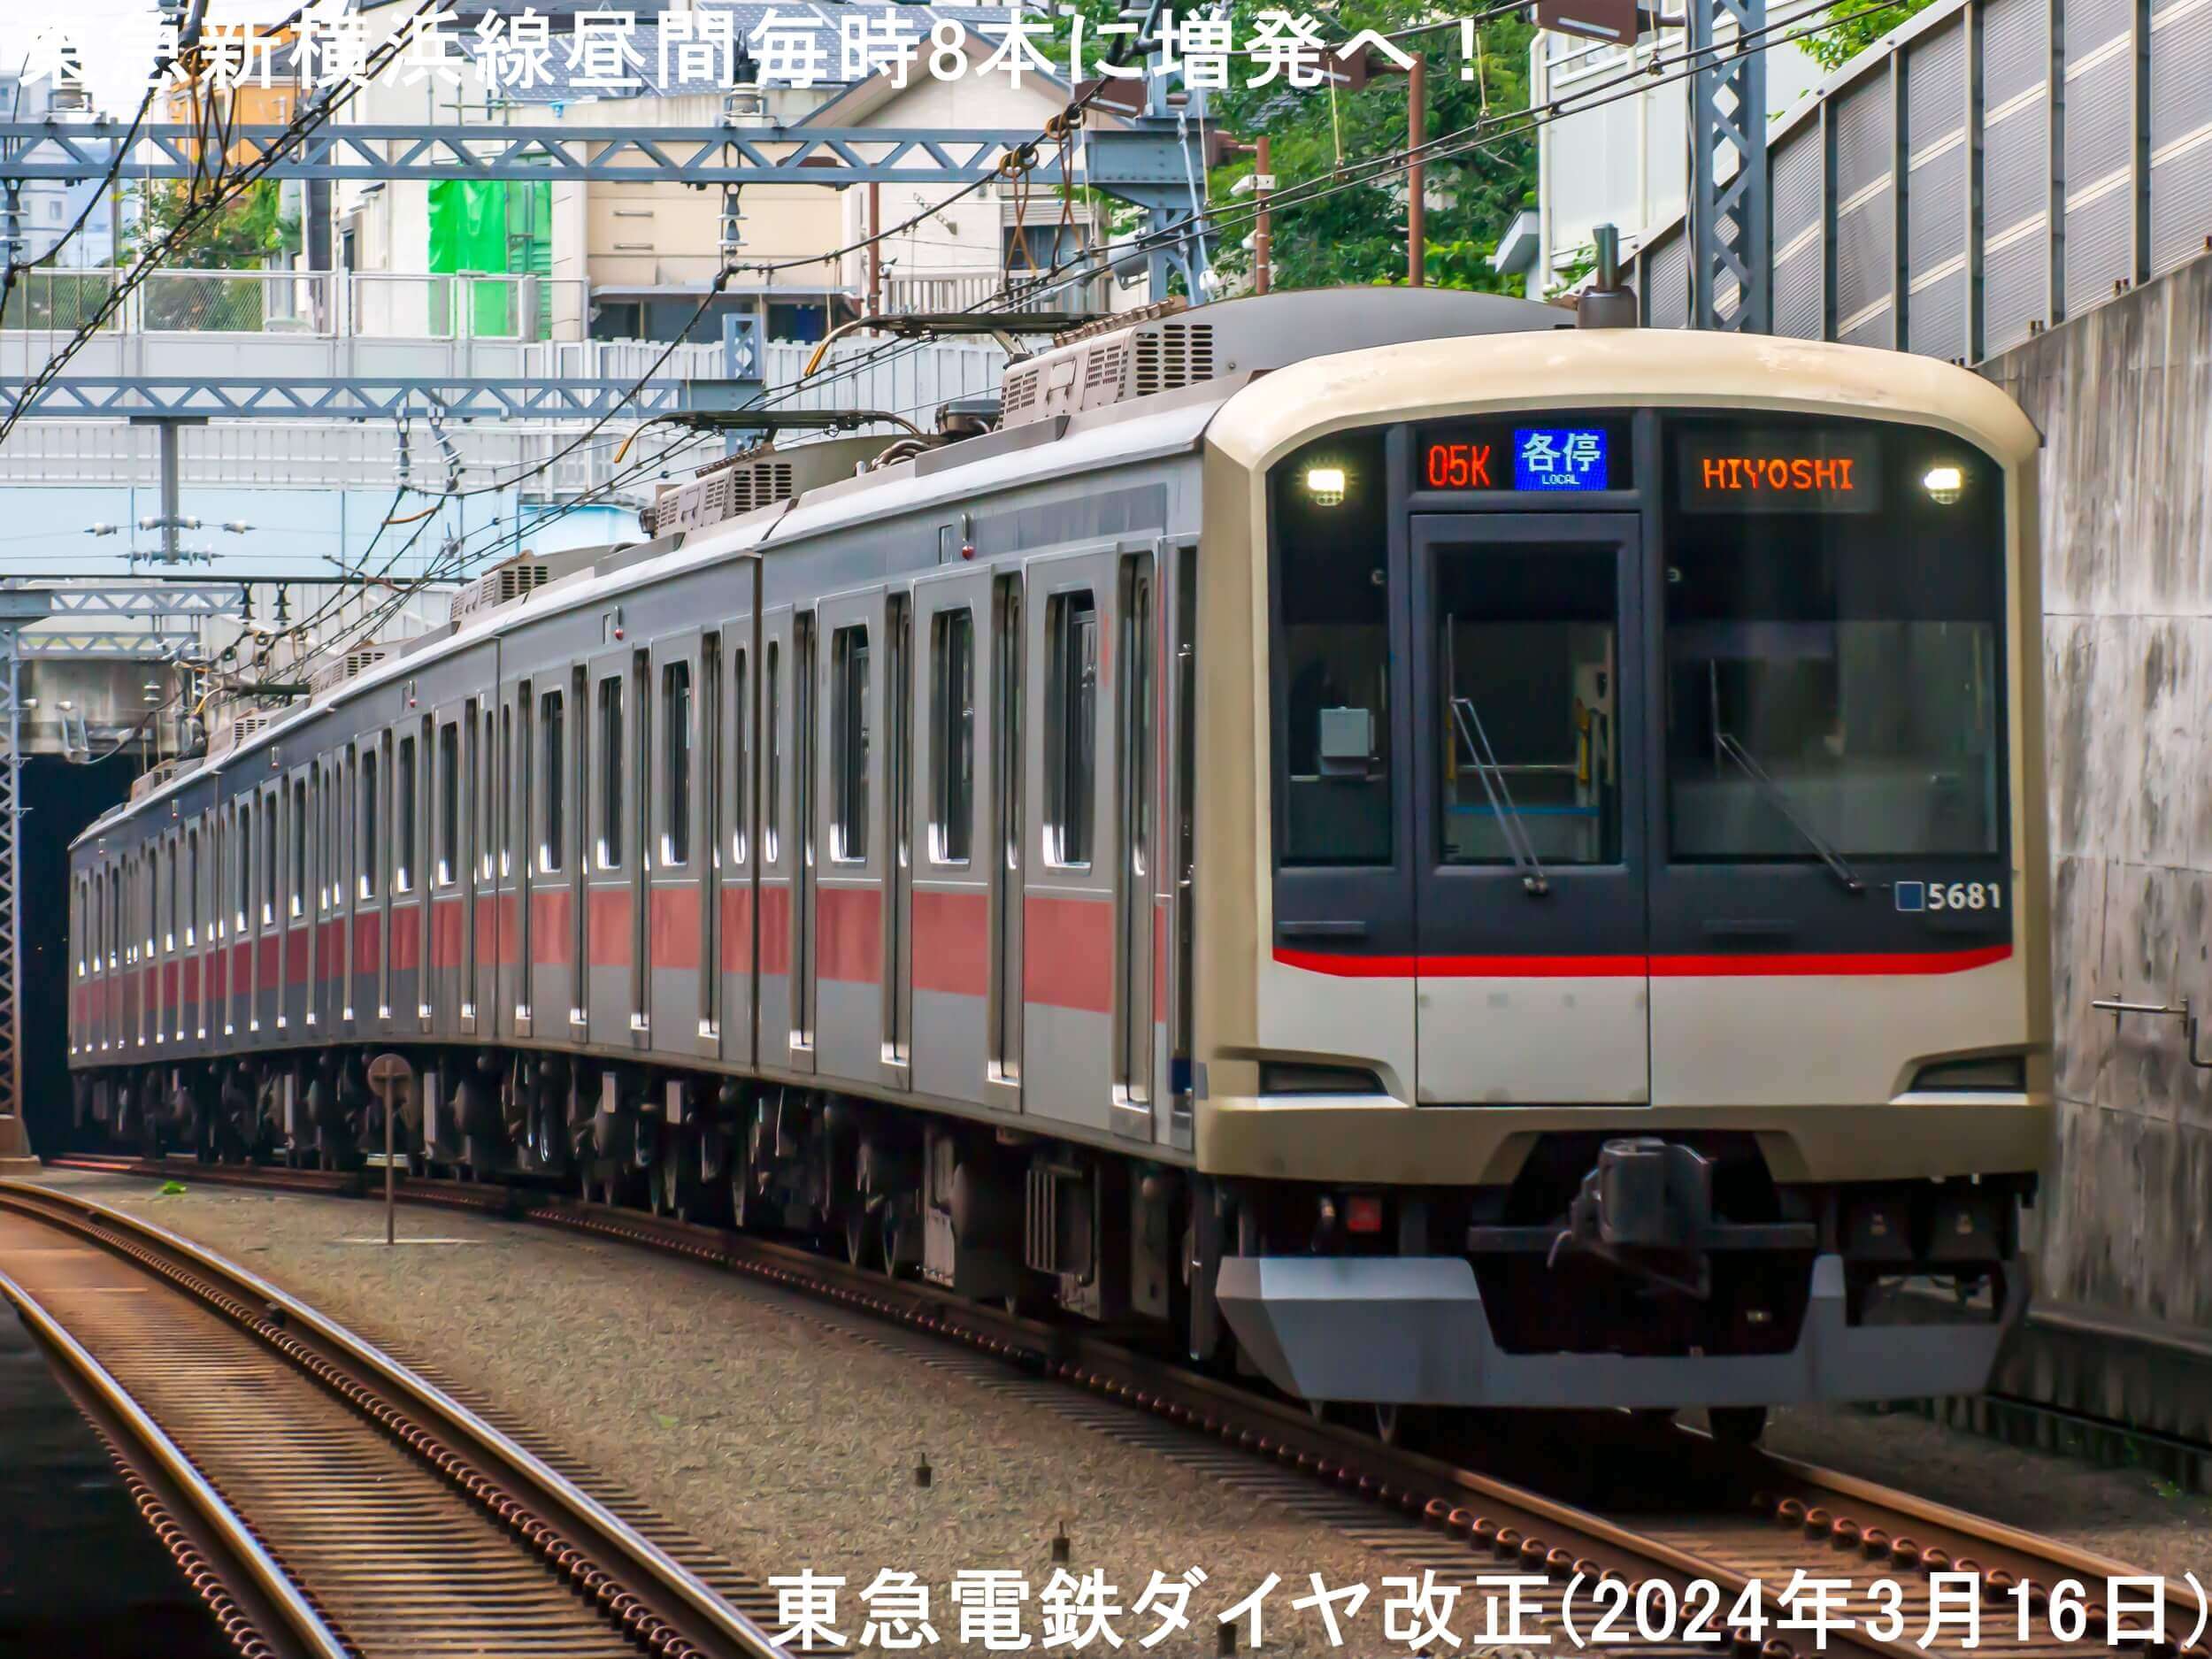 東急新横浜線昼間毎時8本に増発で東海道新幹線接続改善へ！　東急電鉄ダイヤ改正(2024年3月16日)